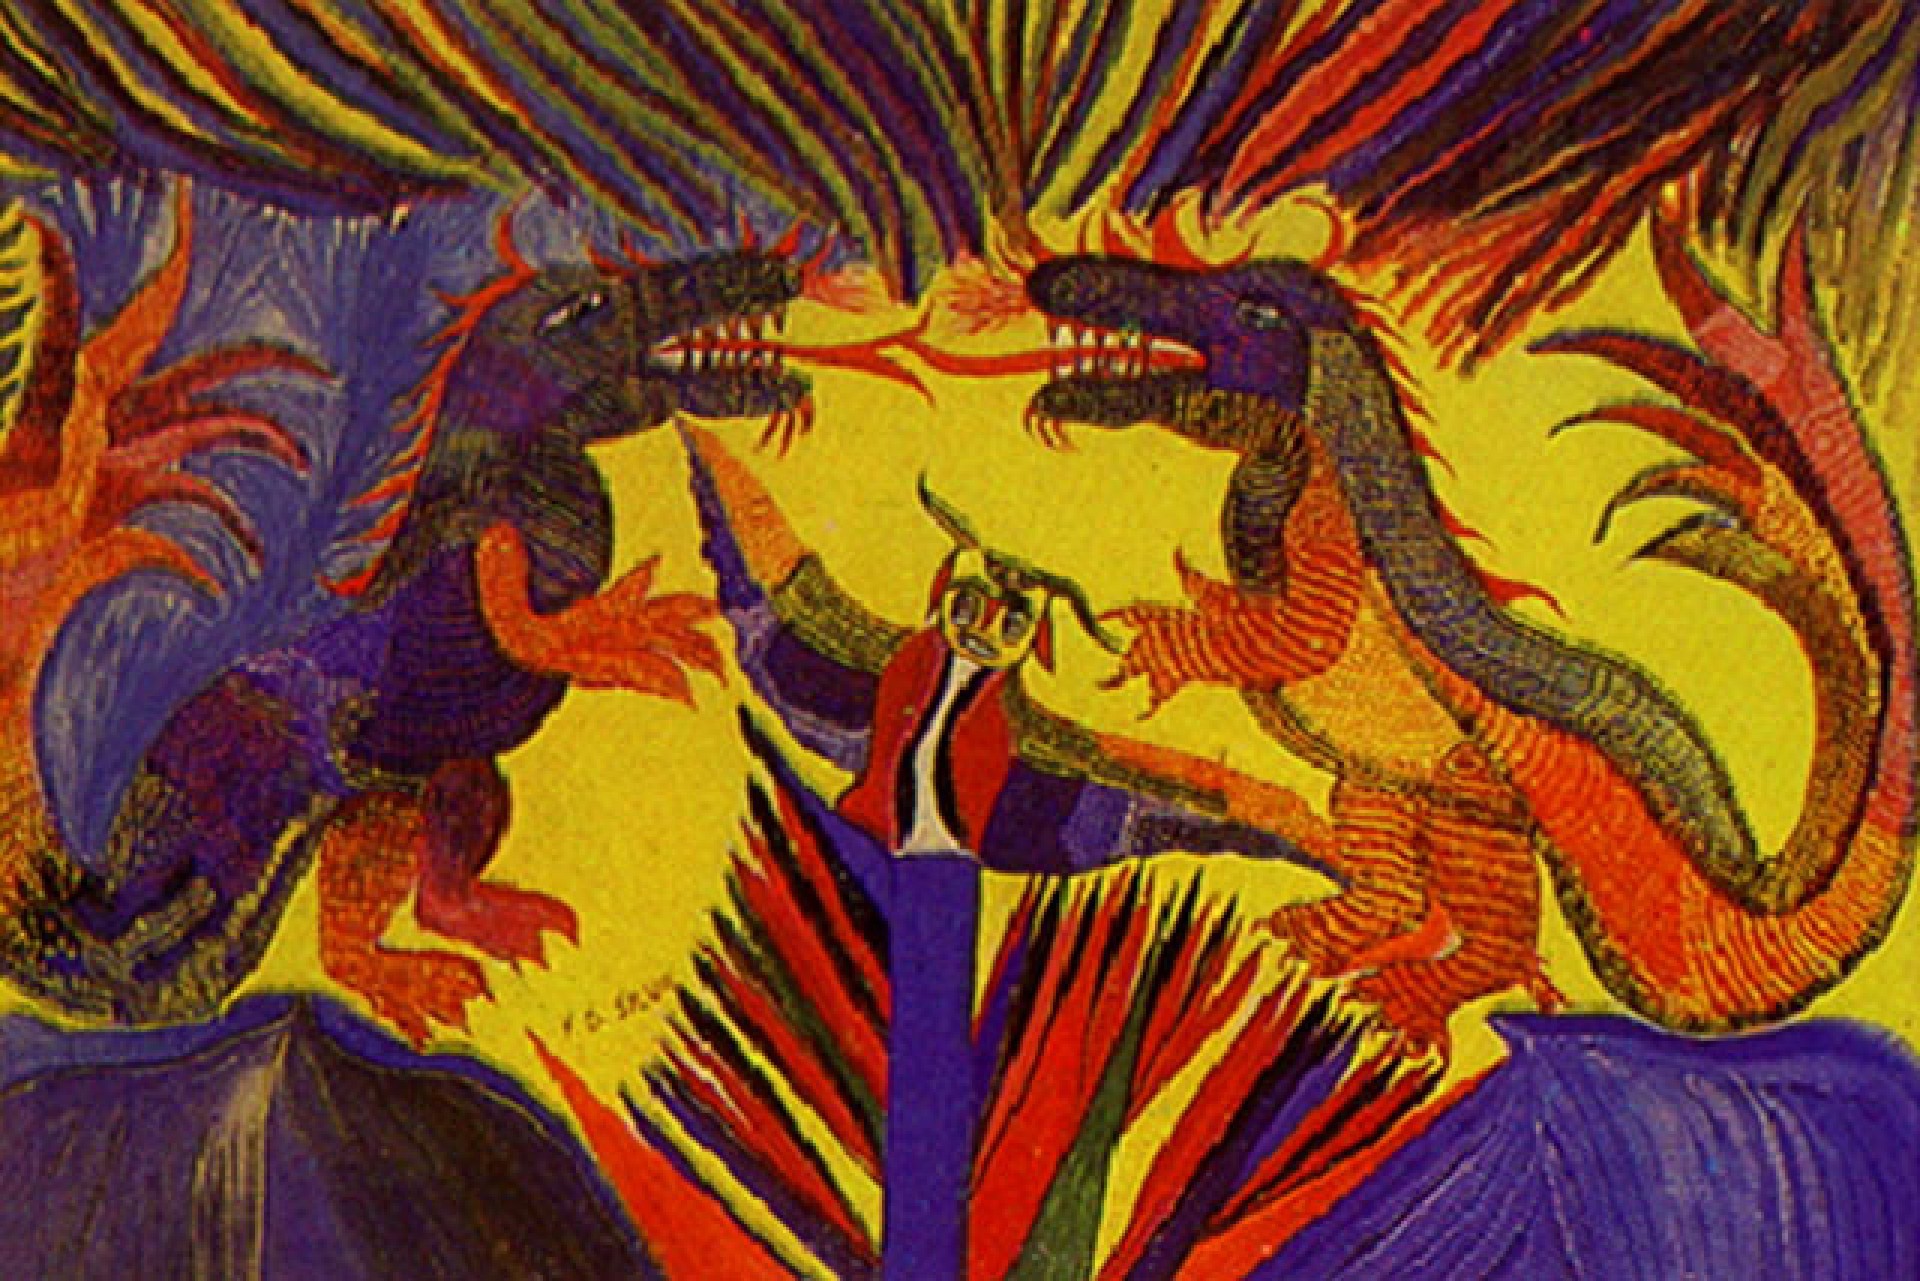  "Dragões e Coruja", guace sobre cartão de Chico da Silva. Acervo: Museu de Arte da UFC (Mauc) (Foto: Reprodução/Itaú Cultural)